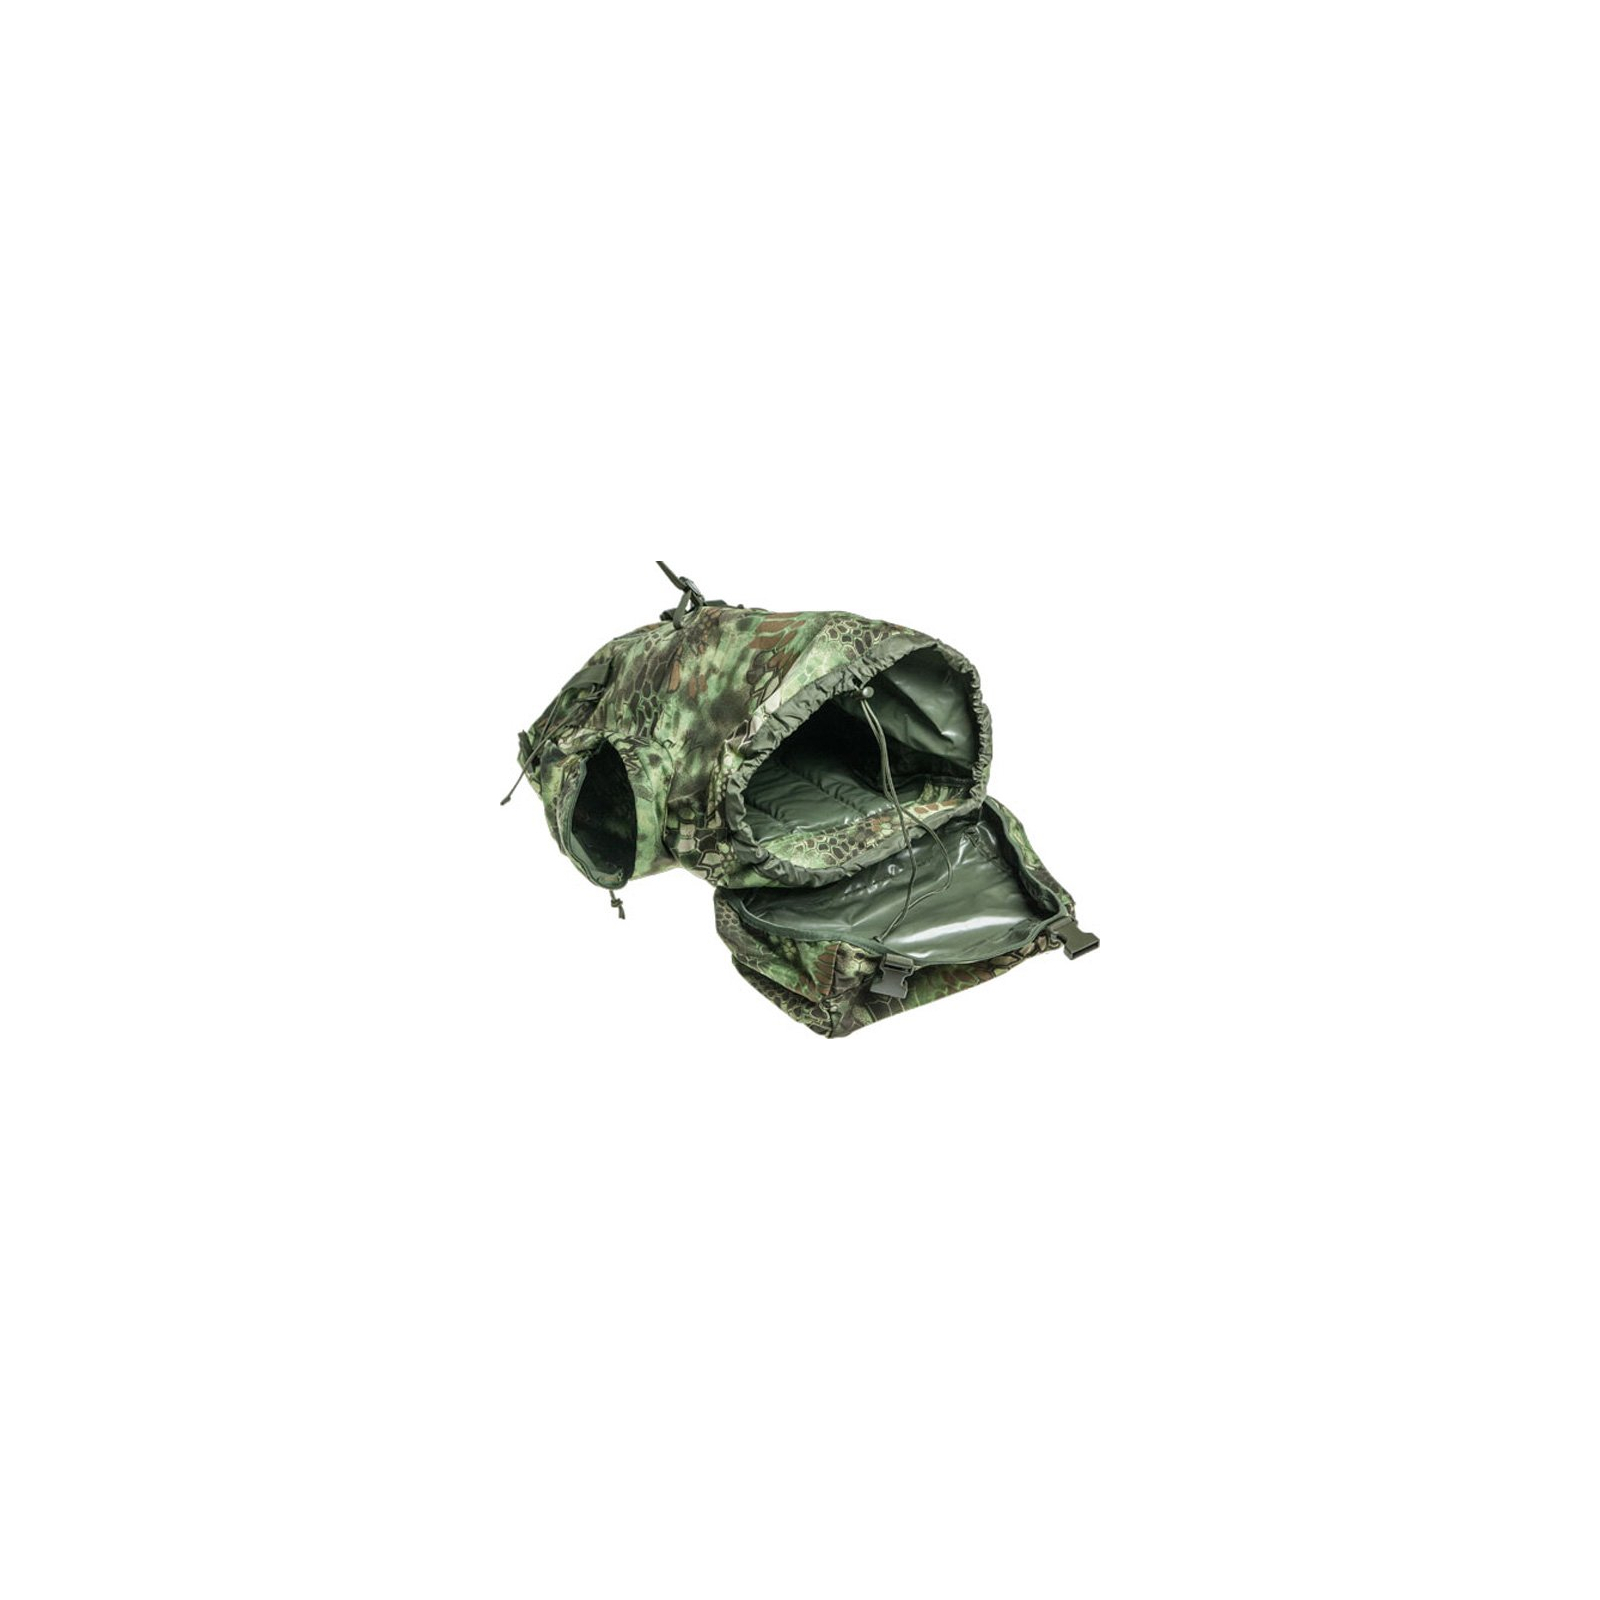 Рюкзак туристичний Skif Tac тактический полевой 45 литров kryptek green (GB0075-KGR) зображення 3